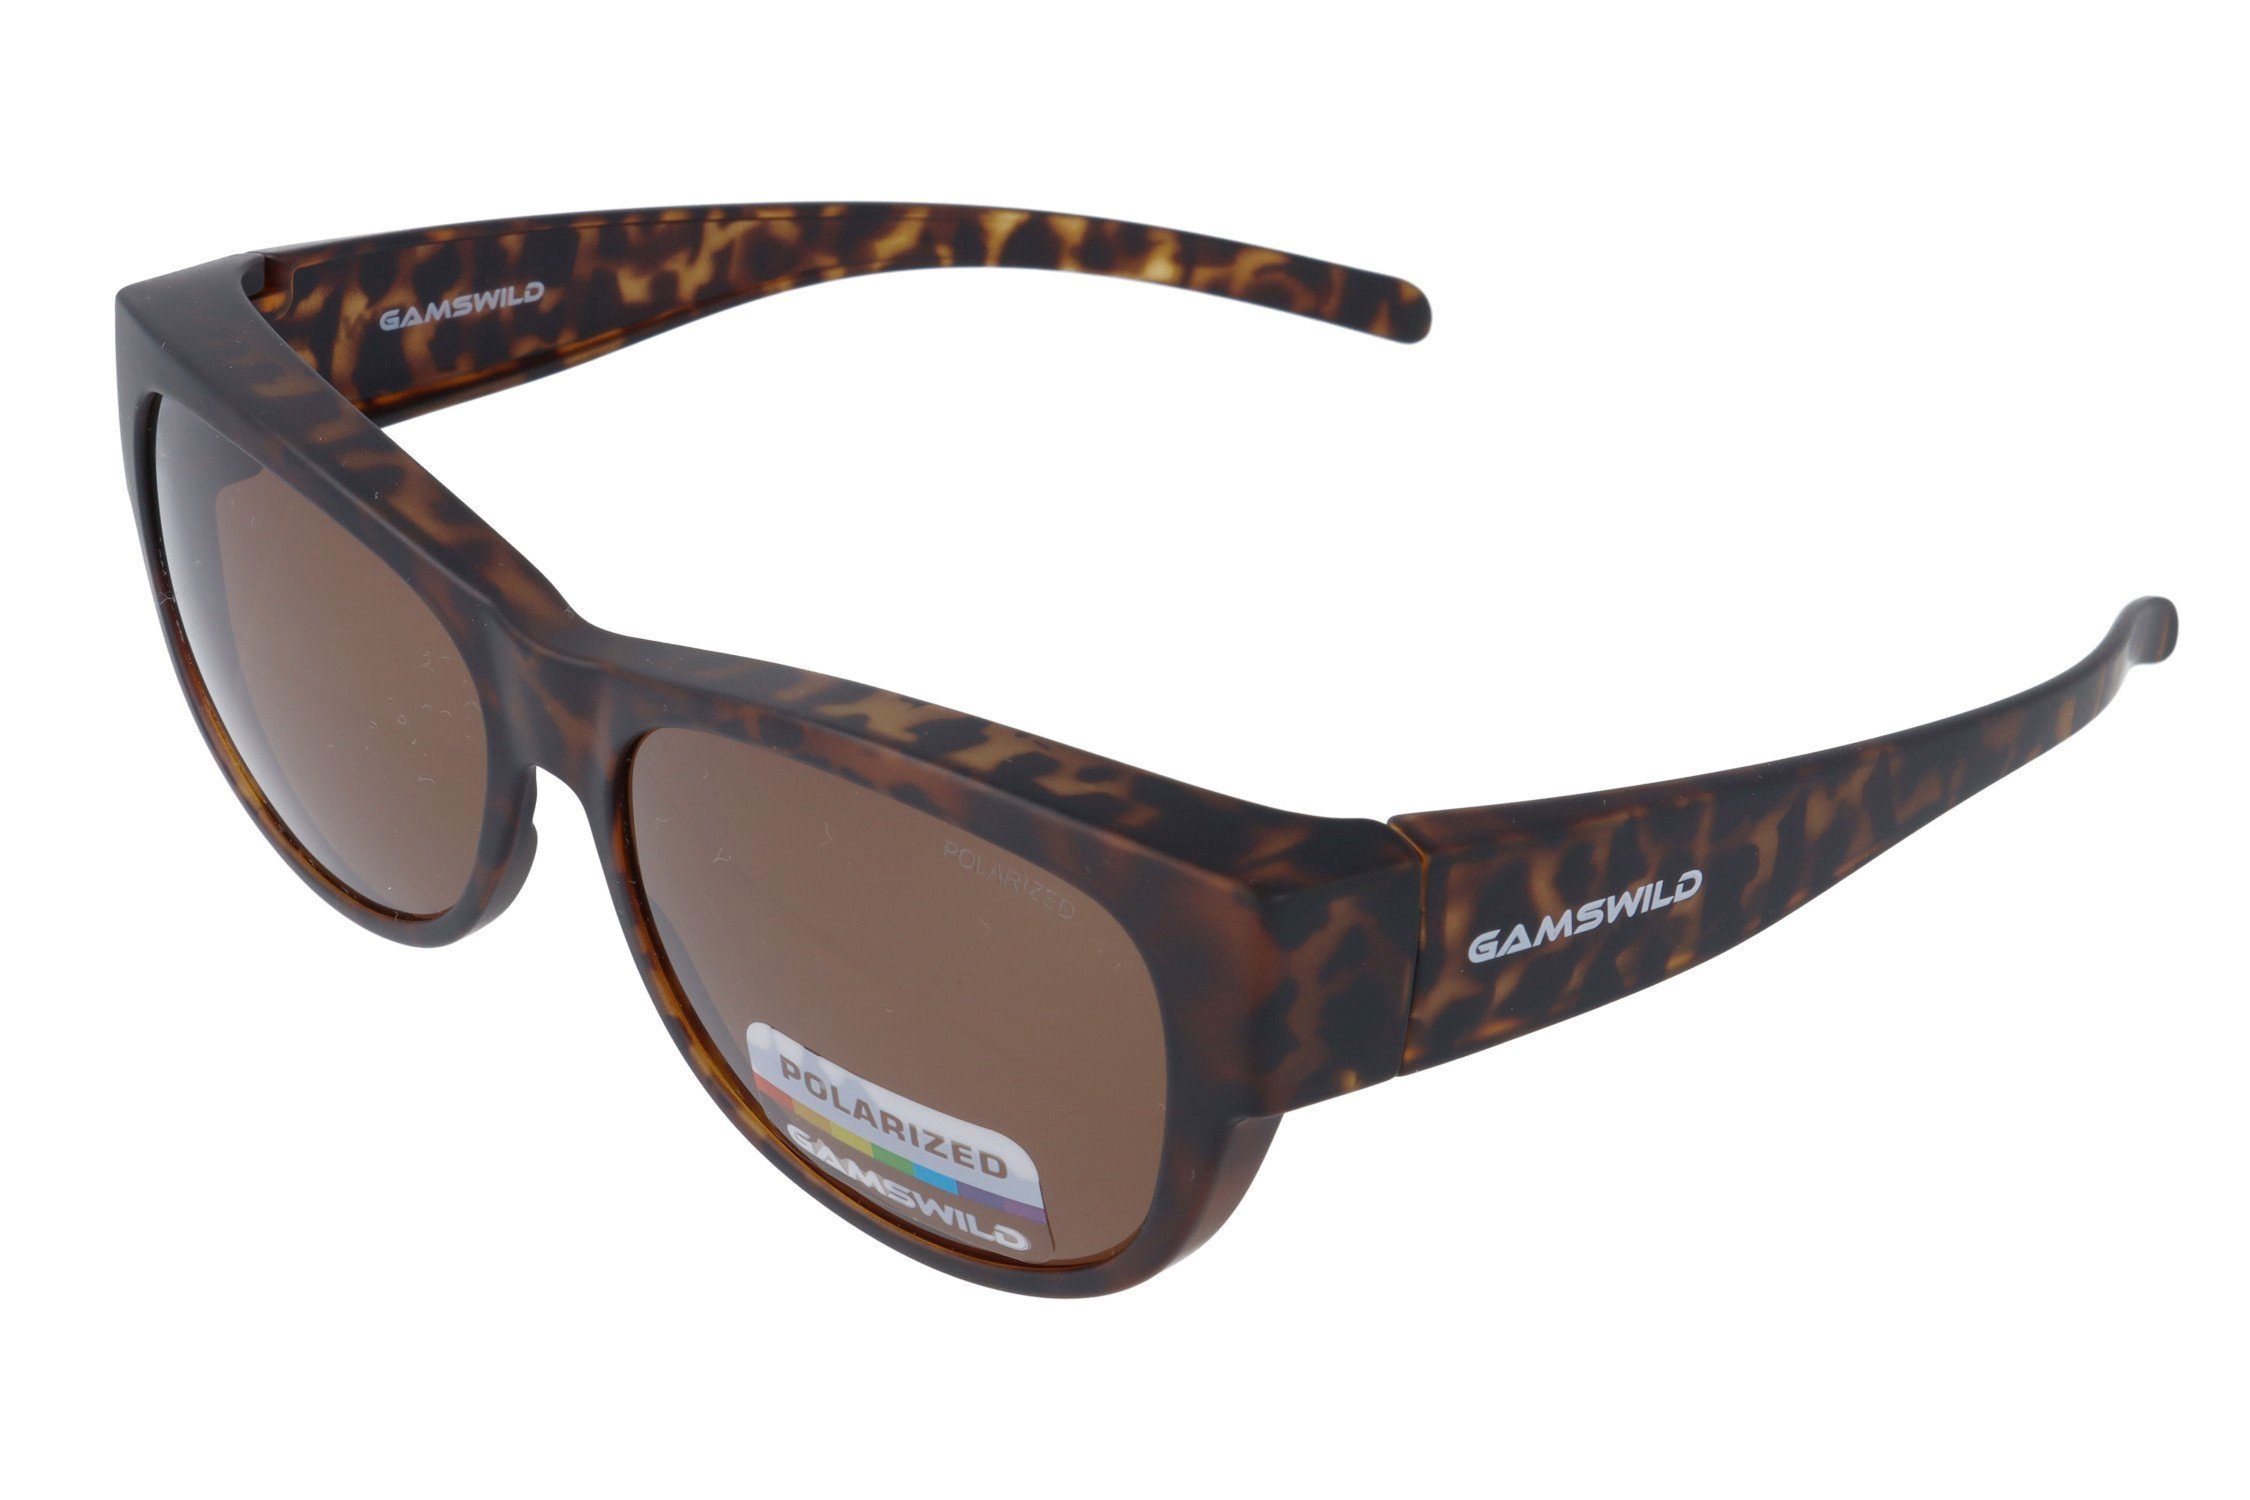 Gamswild Sonnenbrille WS4032 Überbrille Sportbrille Damen Herren, schwarz, braun, grau polarisiert, universelle Passform